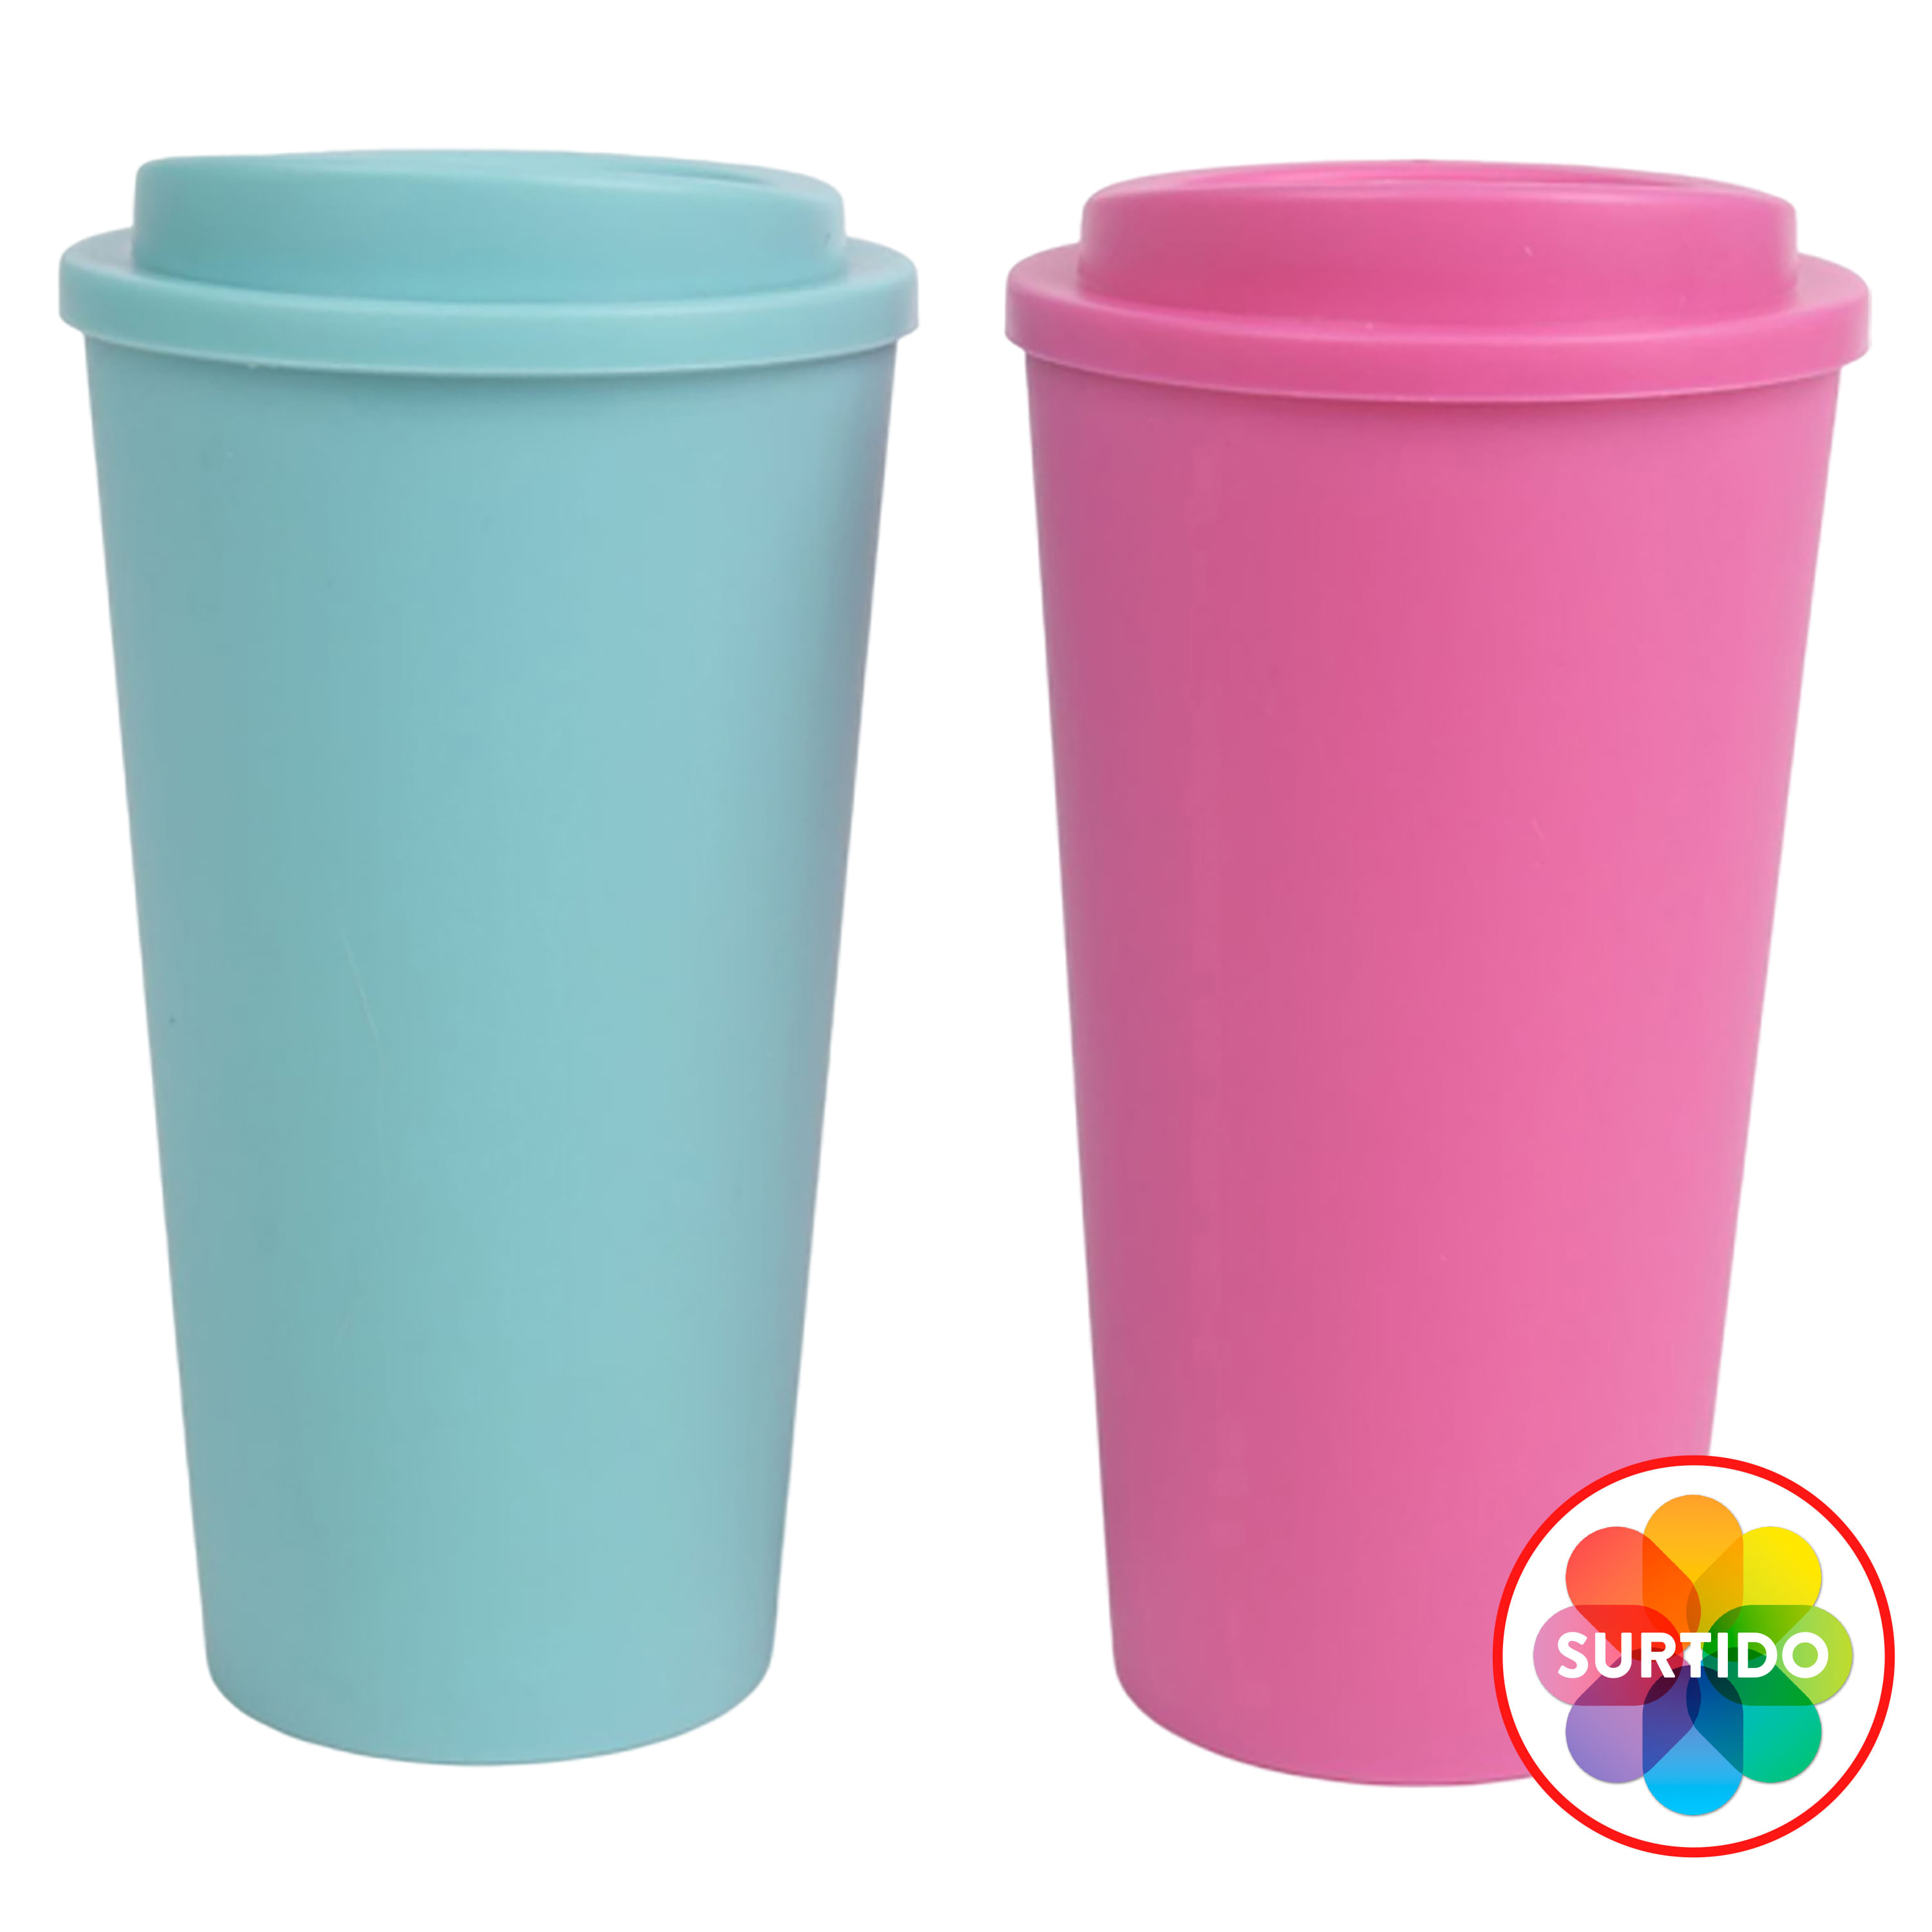 Budget-Wise Comprar Vaso Para Cafe Con Tapa, vaso para cafe